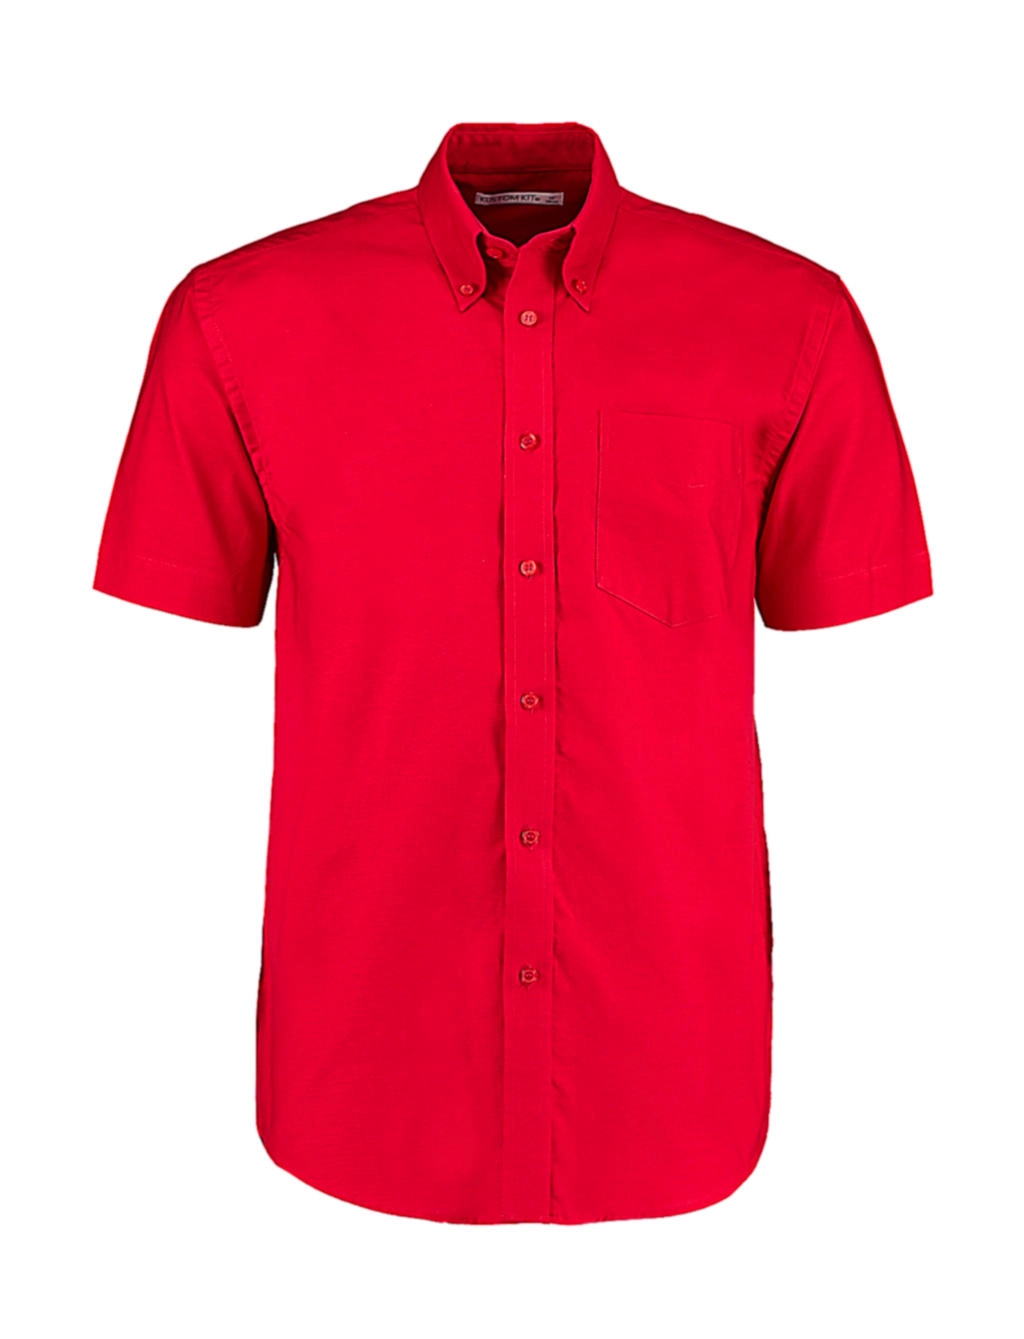 Classic Fit Workwear Oxford Shirt SSL zum Besticken und Bedrucken in der Farbe Red mit Ihren Logo, Schriftzug oder Motiv.